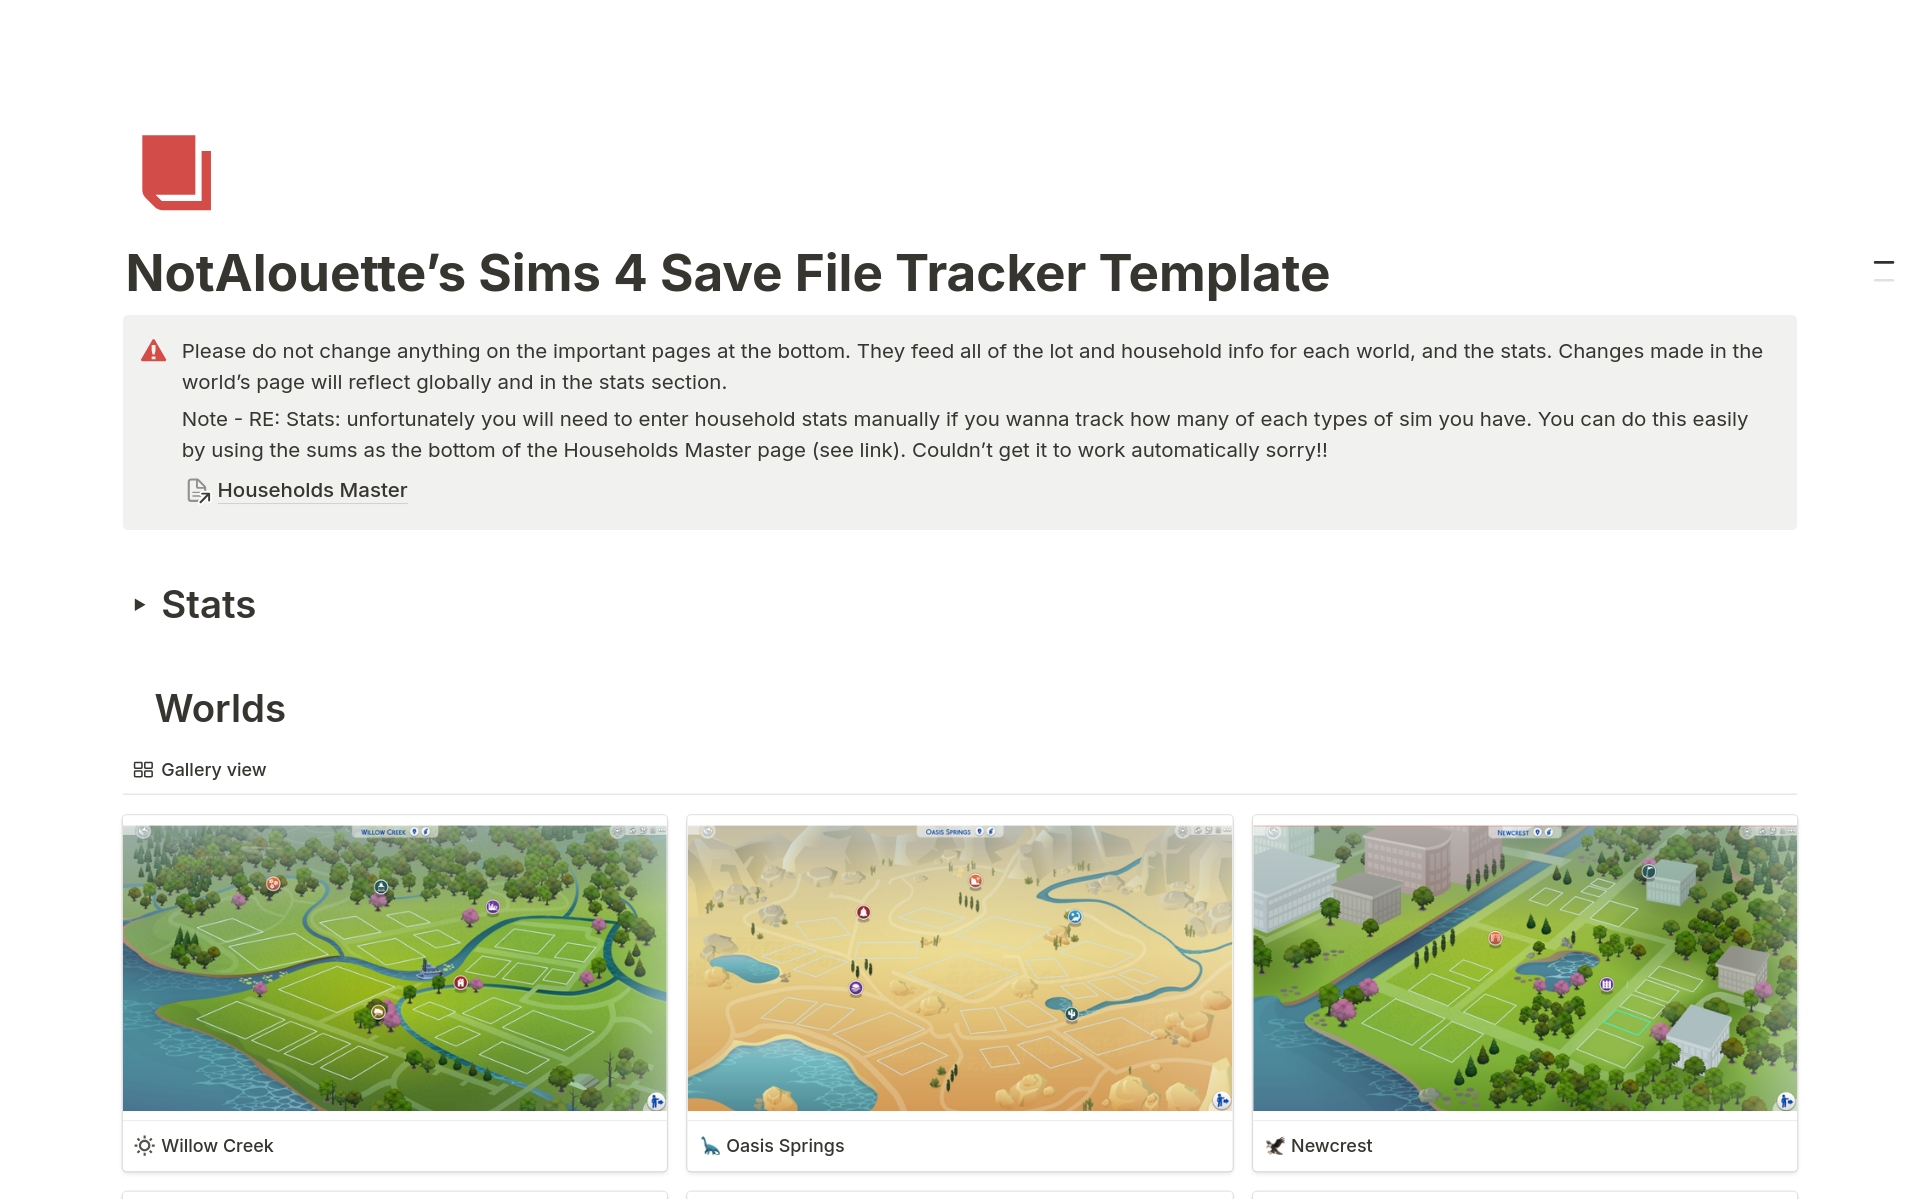 Vista previa de plantilla para Sims 4 Save File Tracker